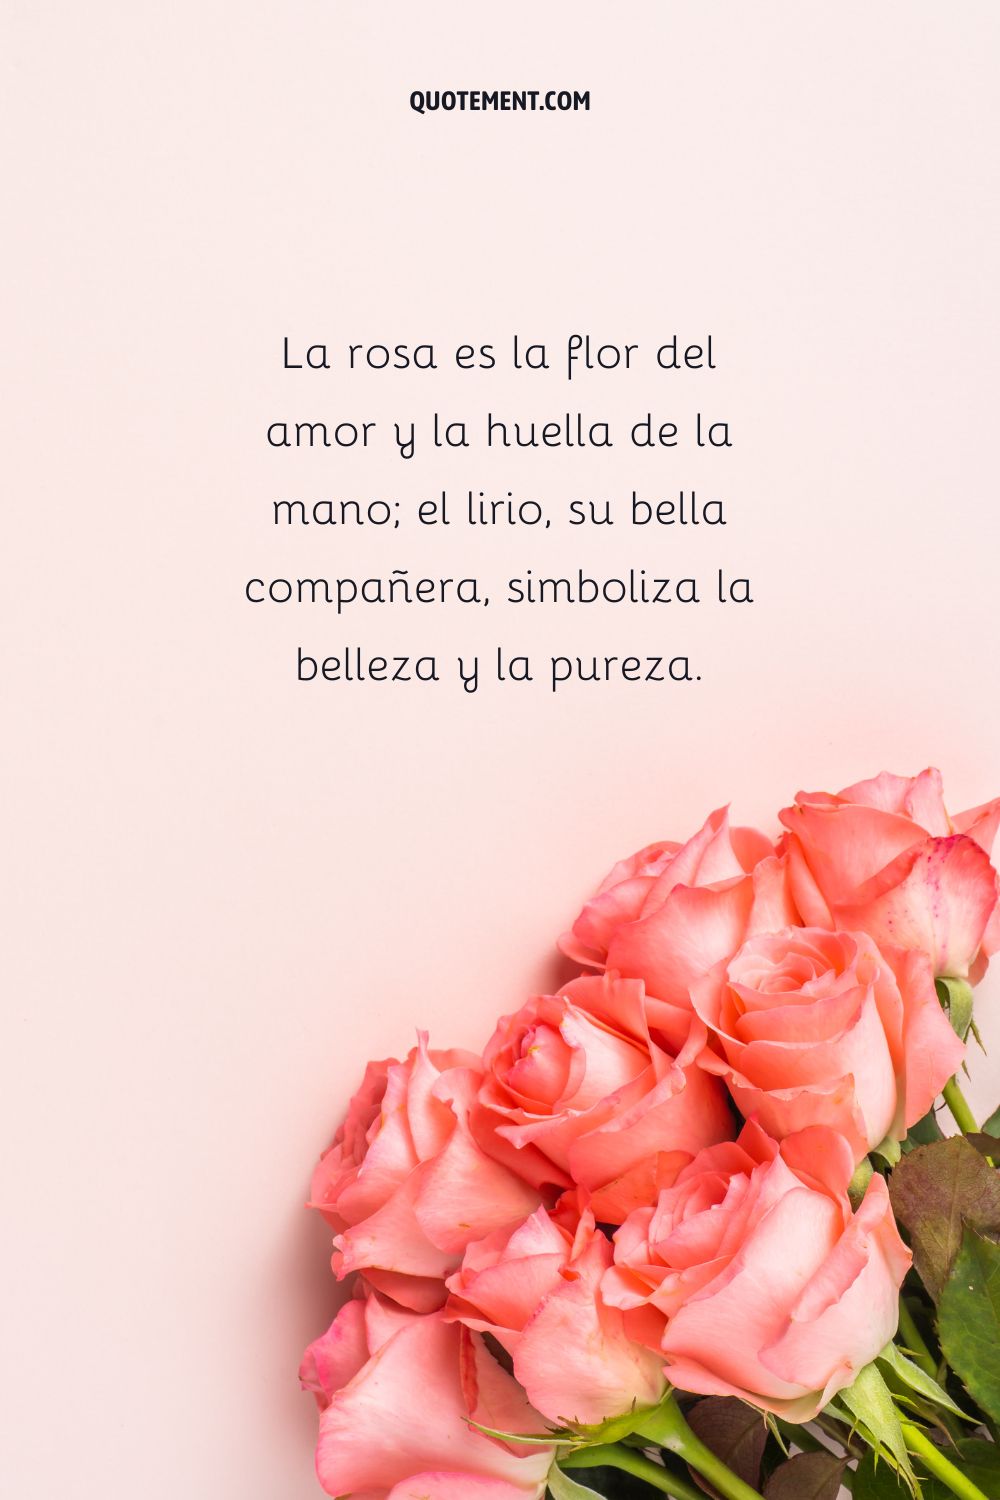 La rosa es la flor del amor y la huella de la mano